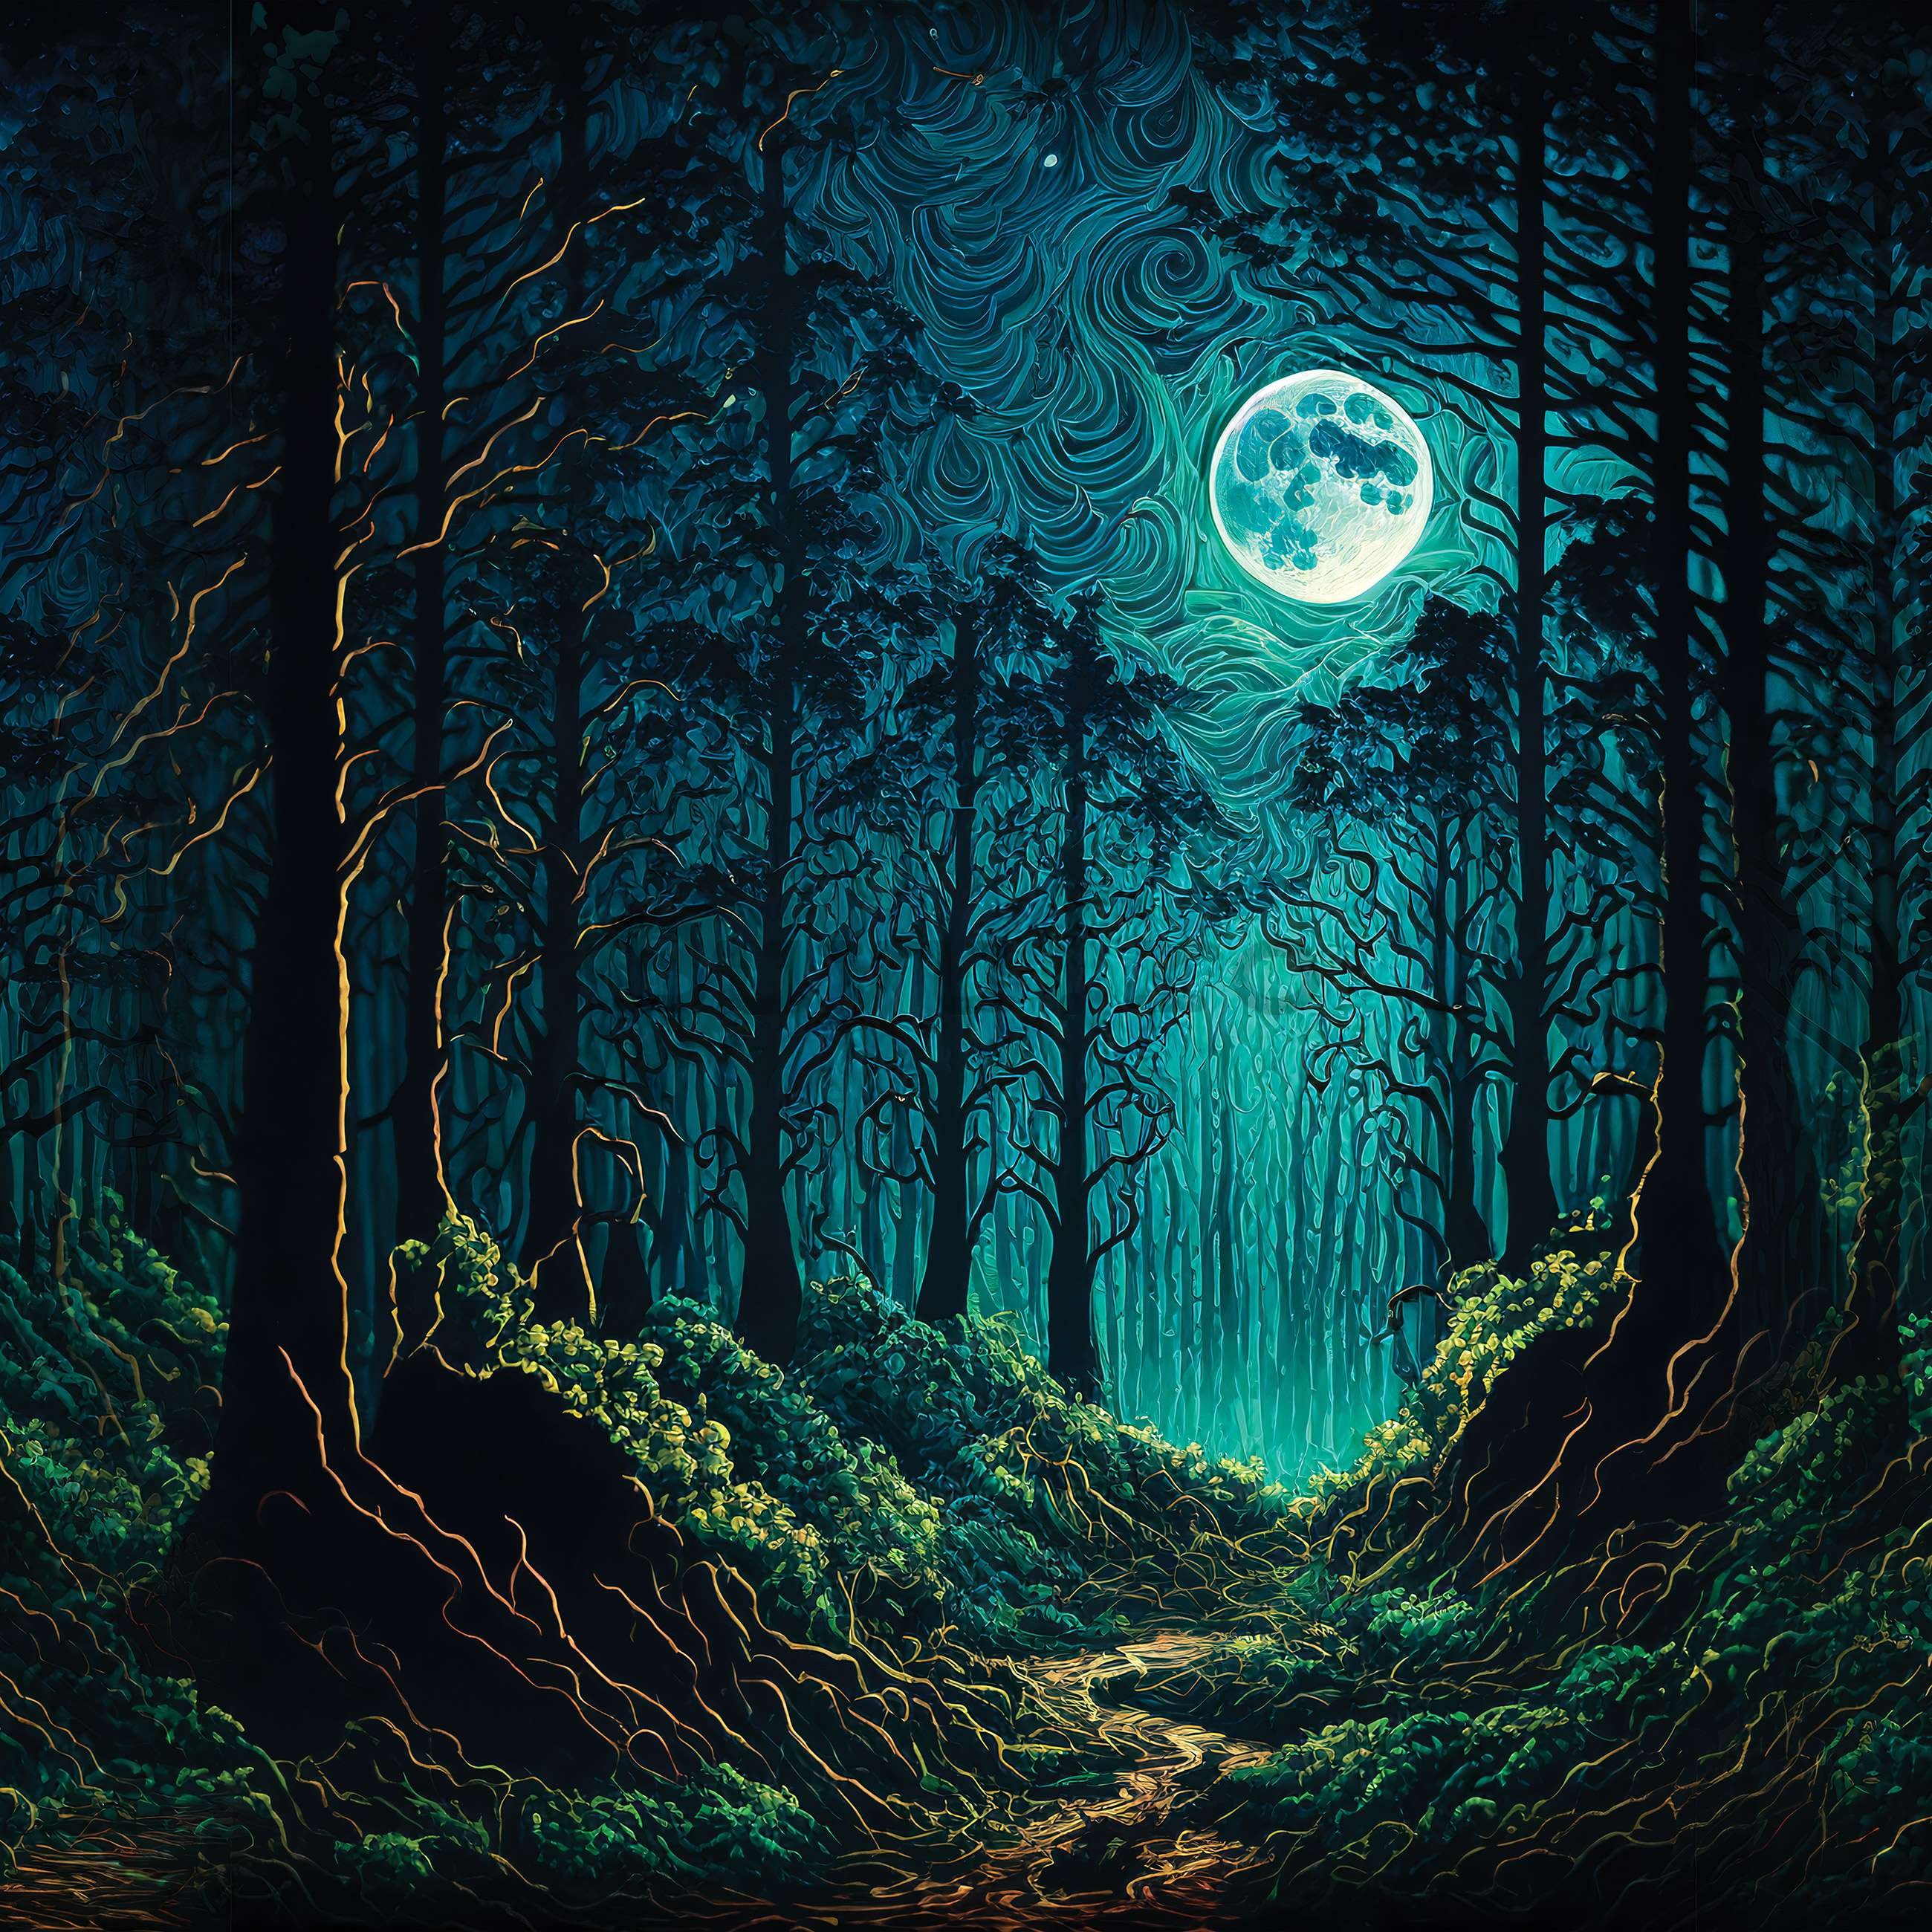 Fototapet vlies: Pădure fermecată în lumina lunii - 368x254 cm